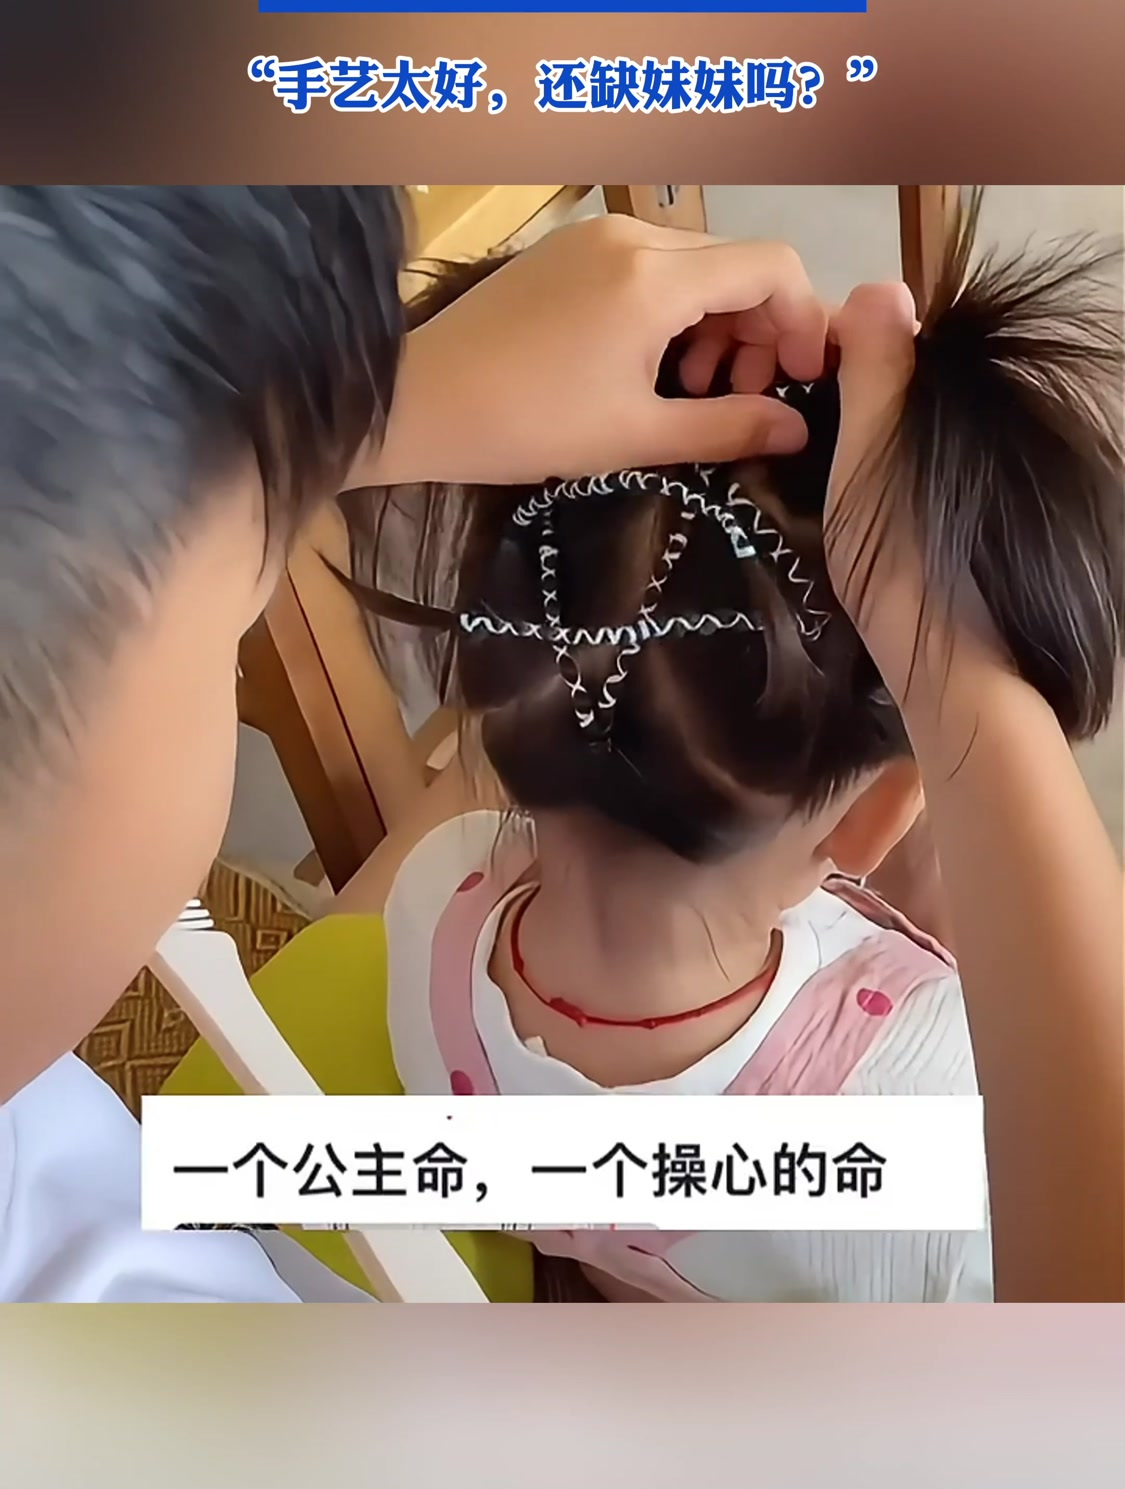 10岁哥哥每天给妹妹扎头发,被这娴熟的手法震惊到了